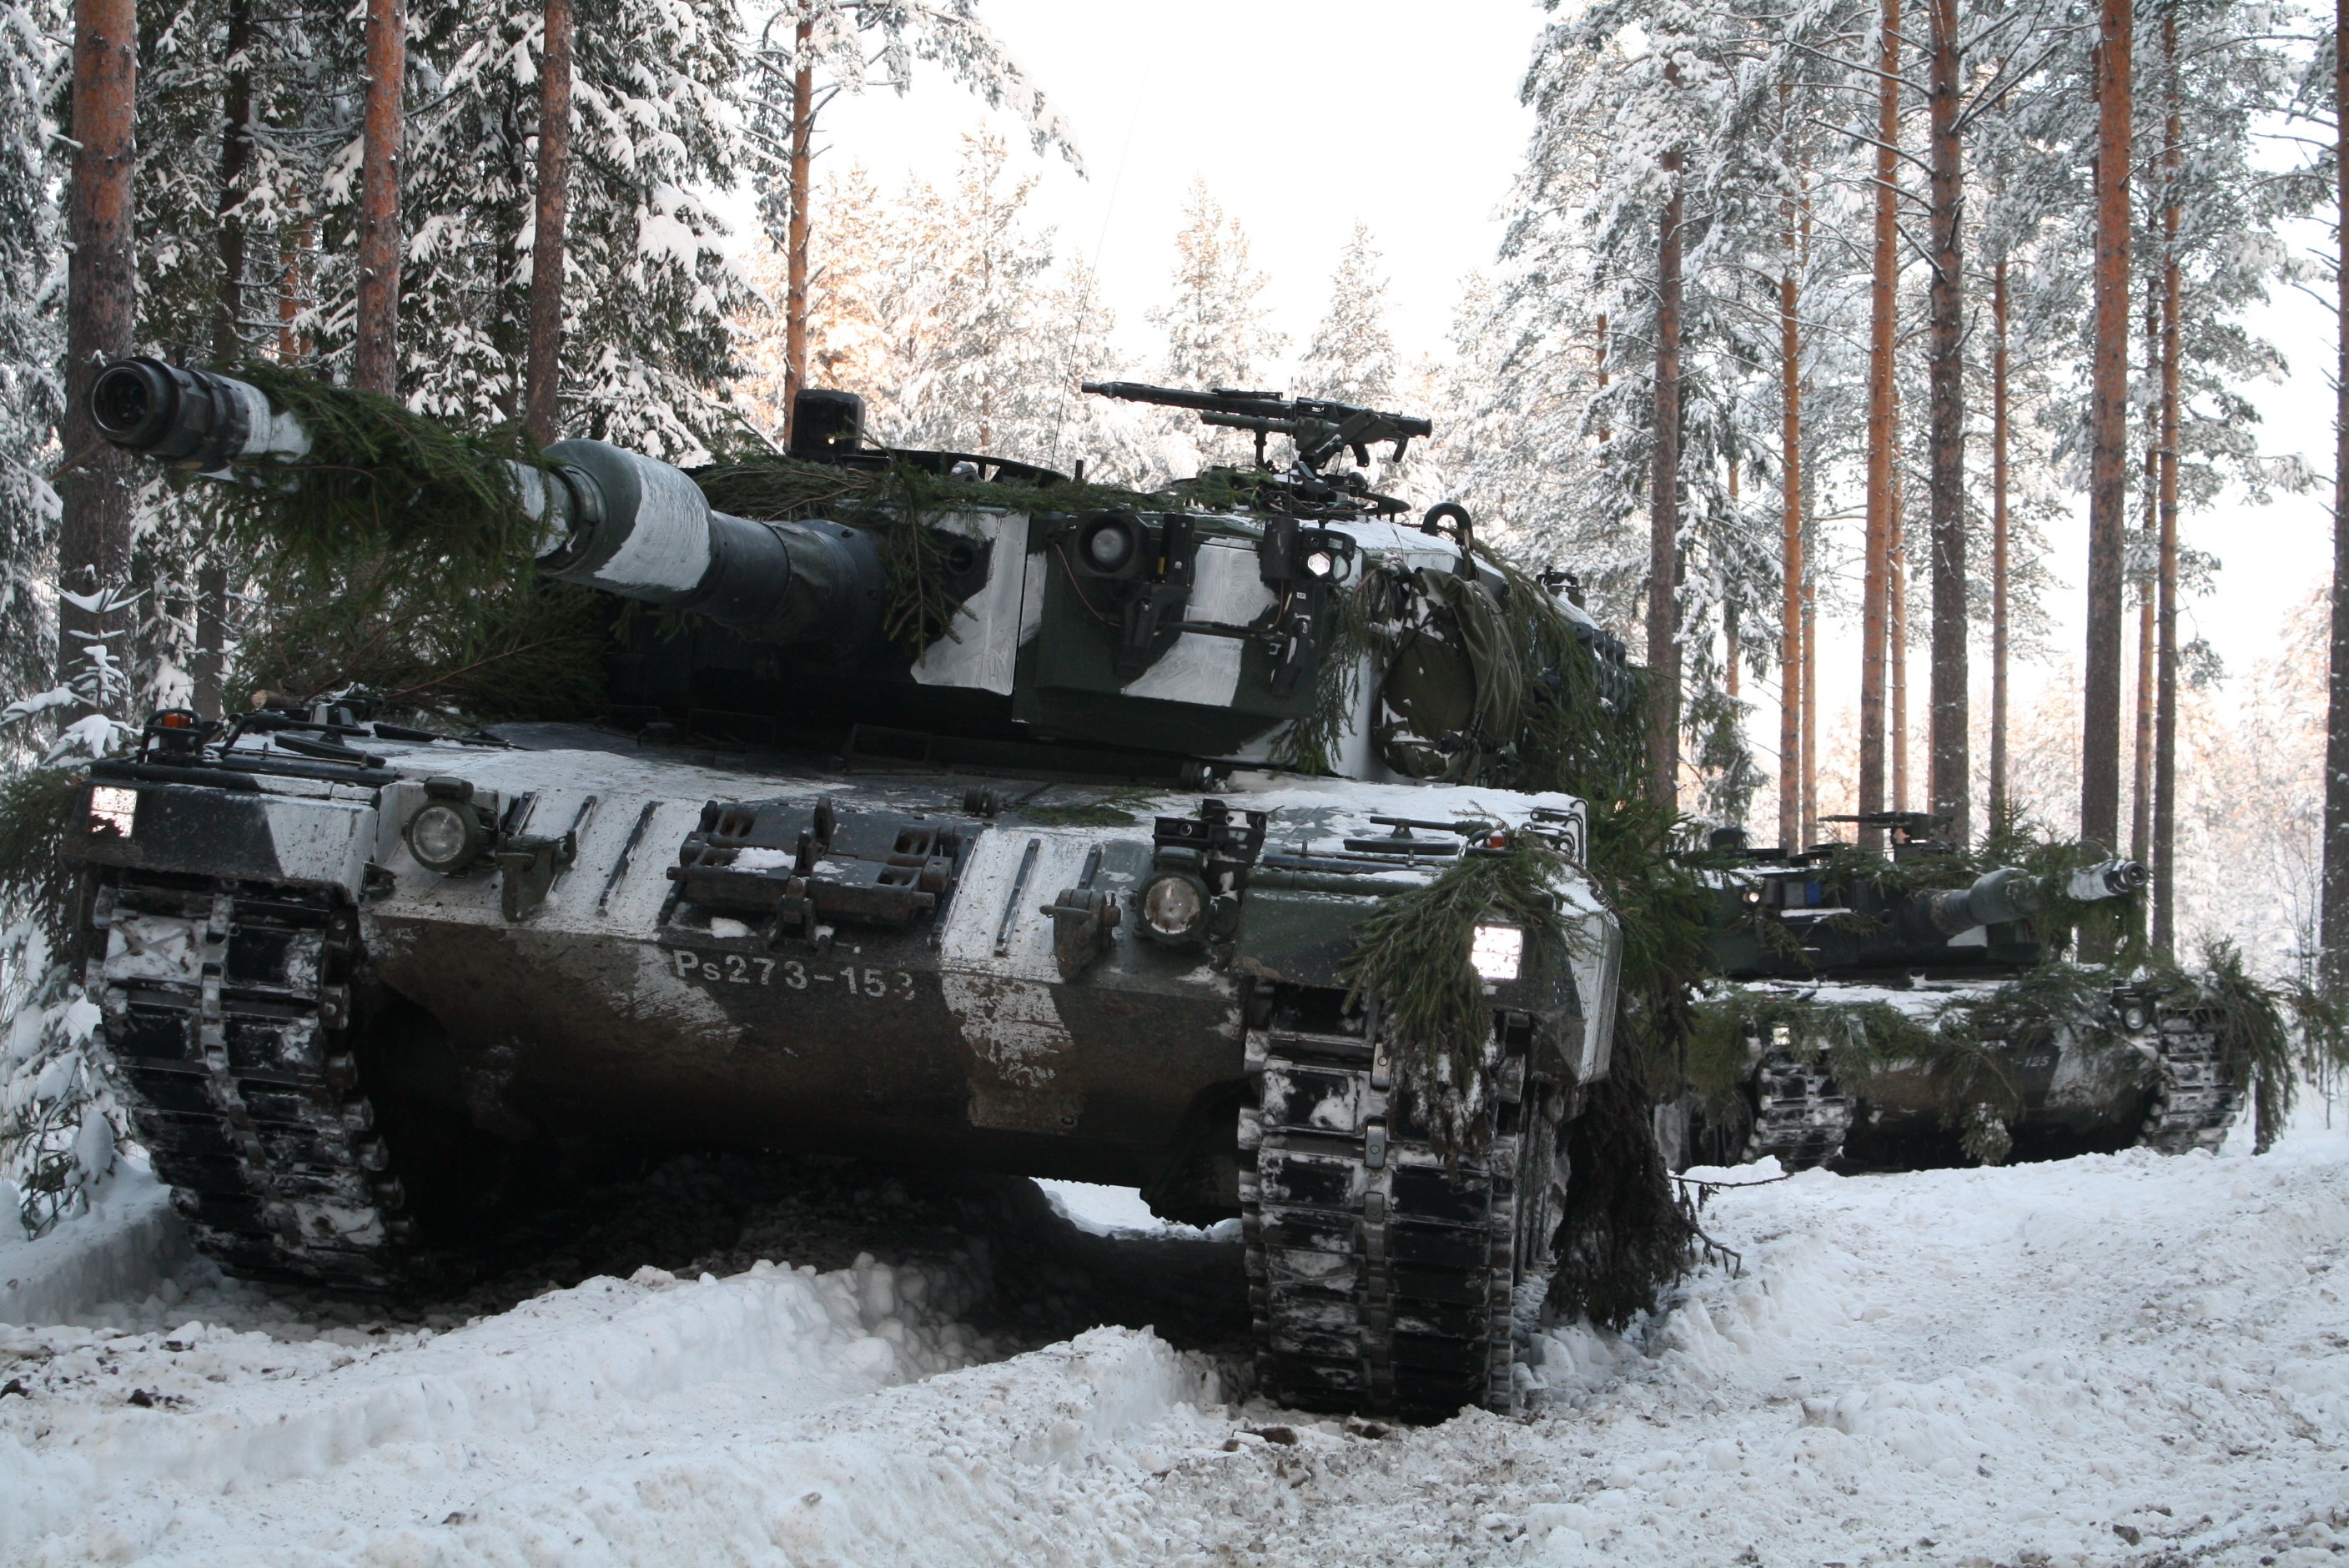 Krauss-Maffei Wegmann Leopard 2A4 main battle tank